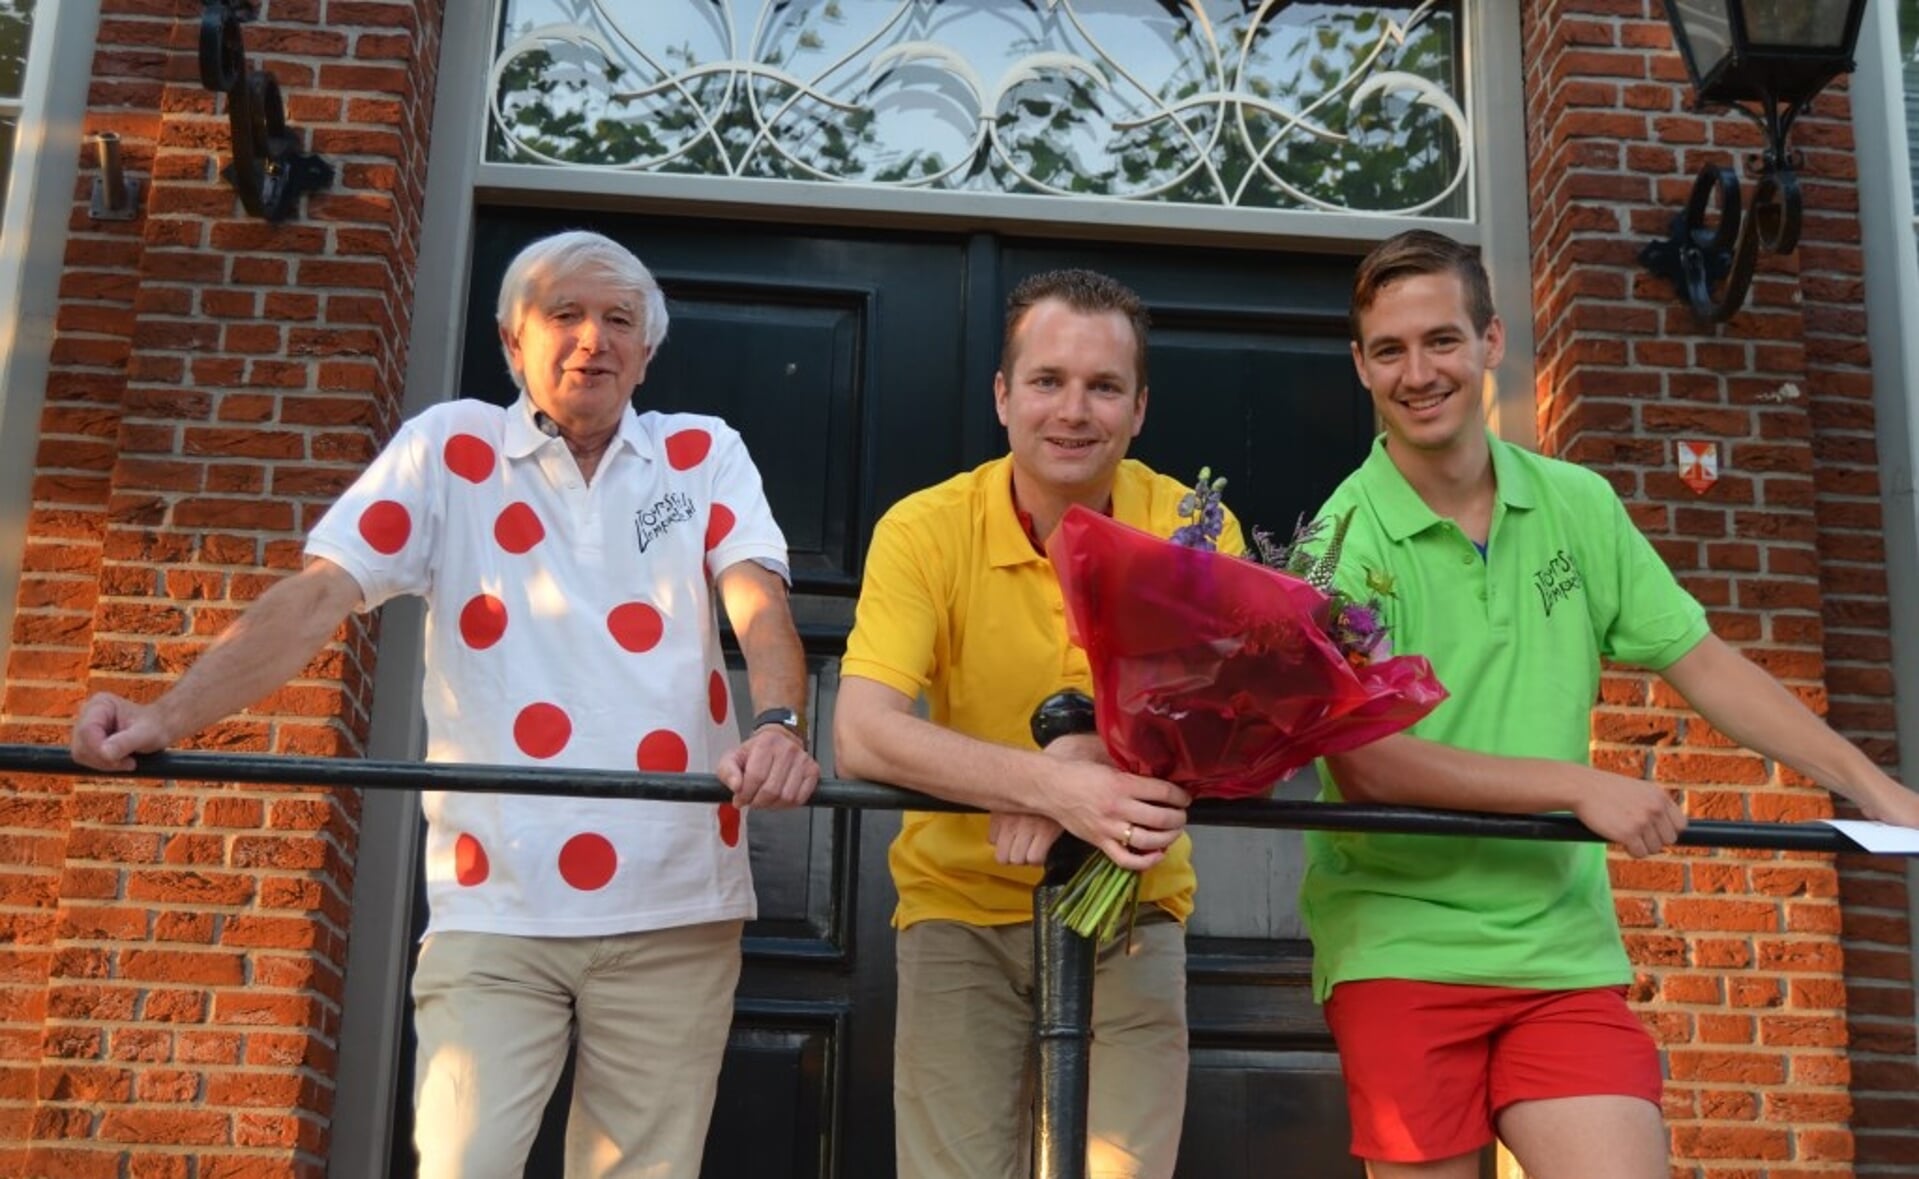 De winnaars van Tourspel Liempde. Vlnr. Gerold Ceelen, Martijn van Kempen (namens winnaar en echtgenote Maaike) en Luc Schellekens.